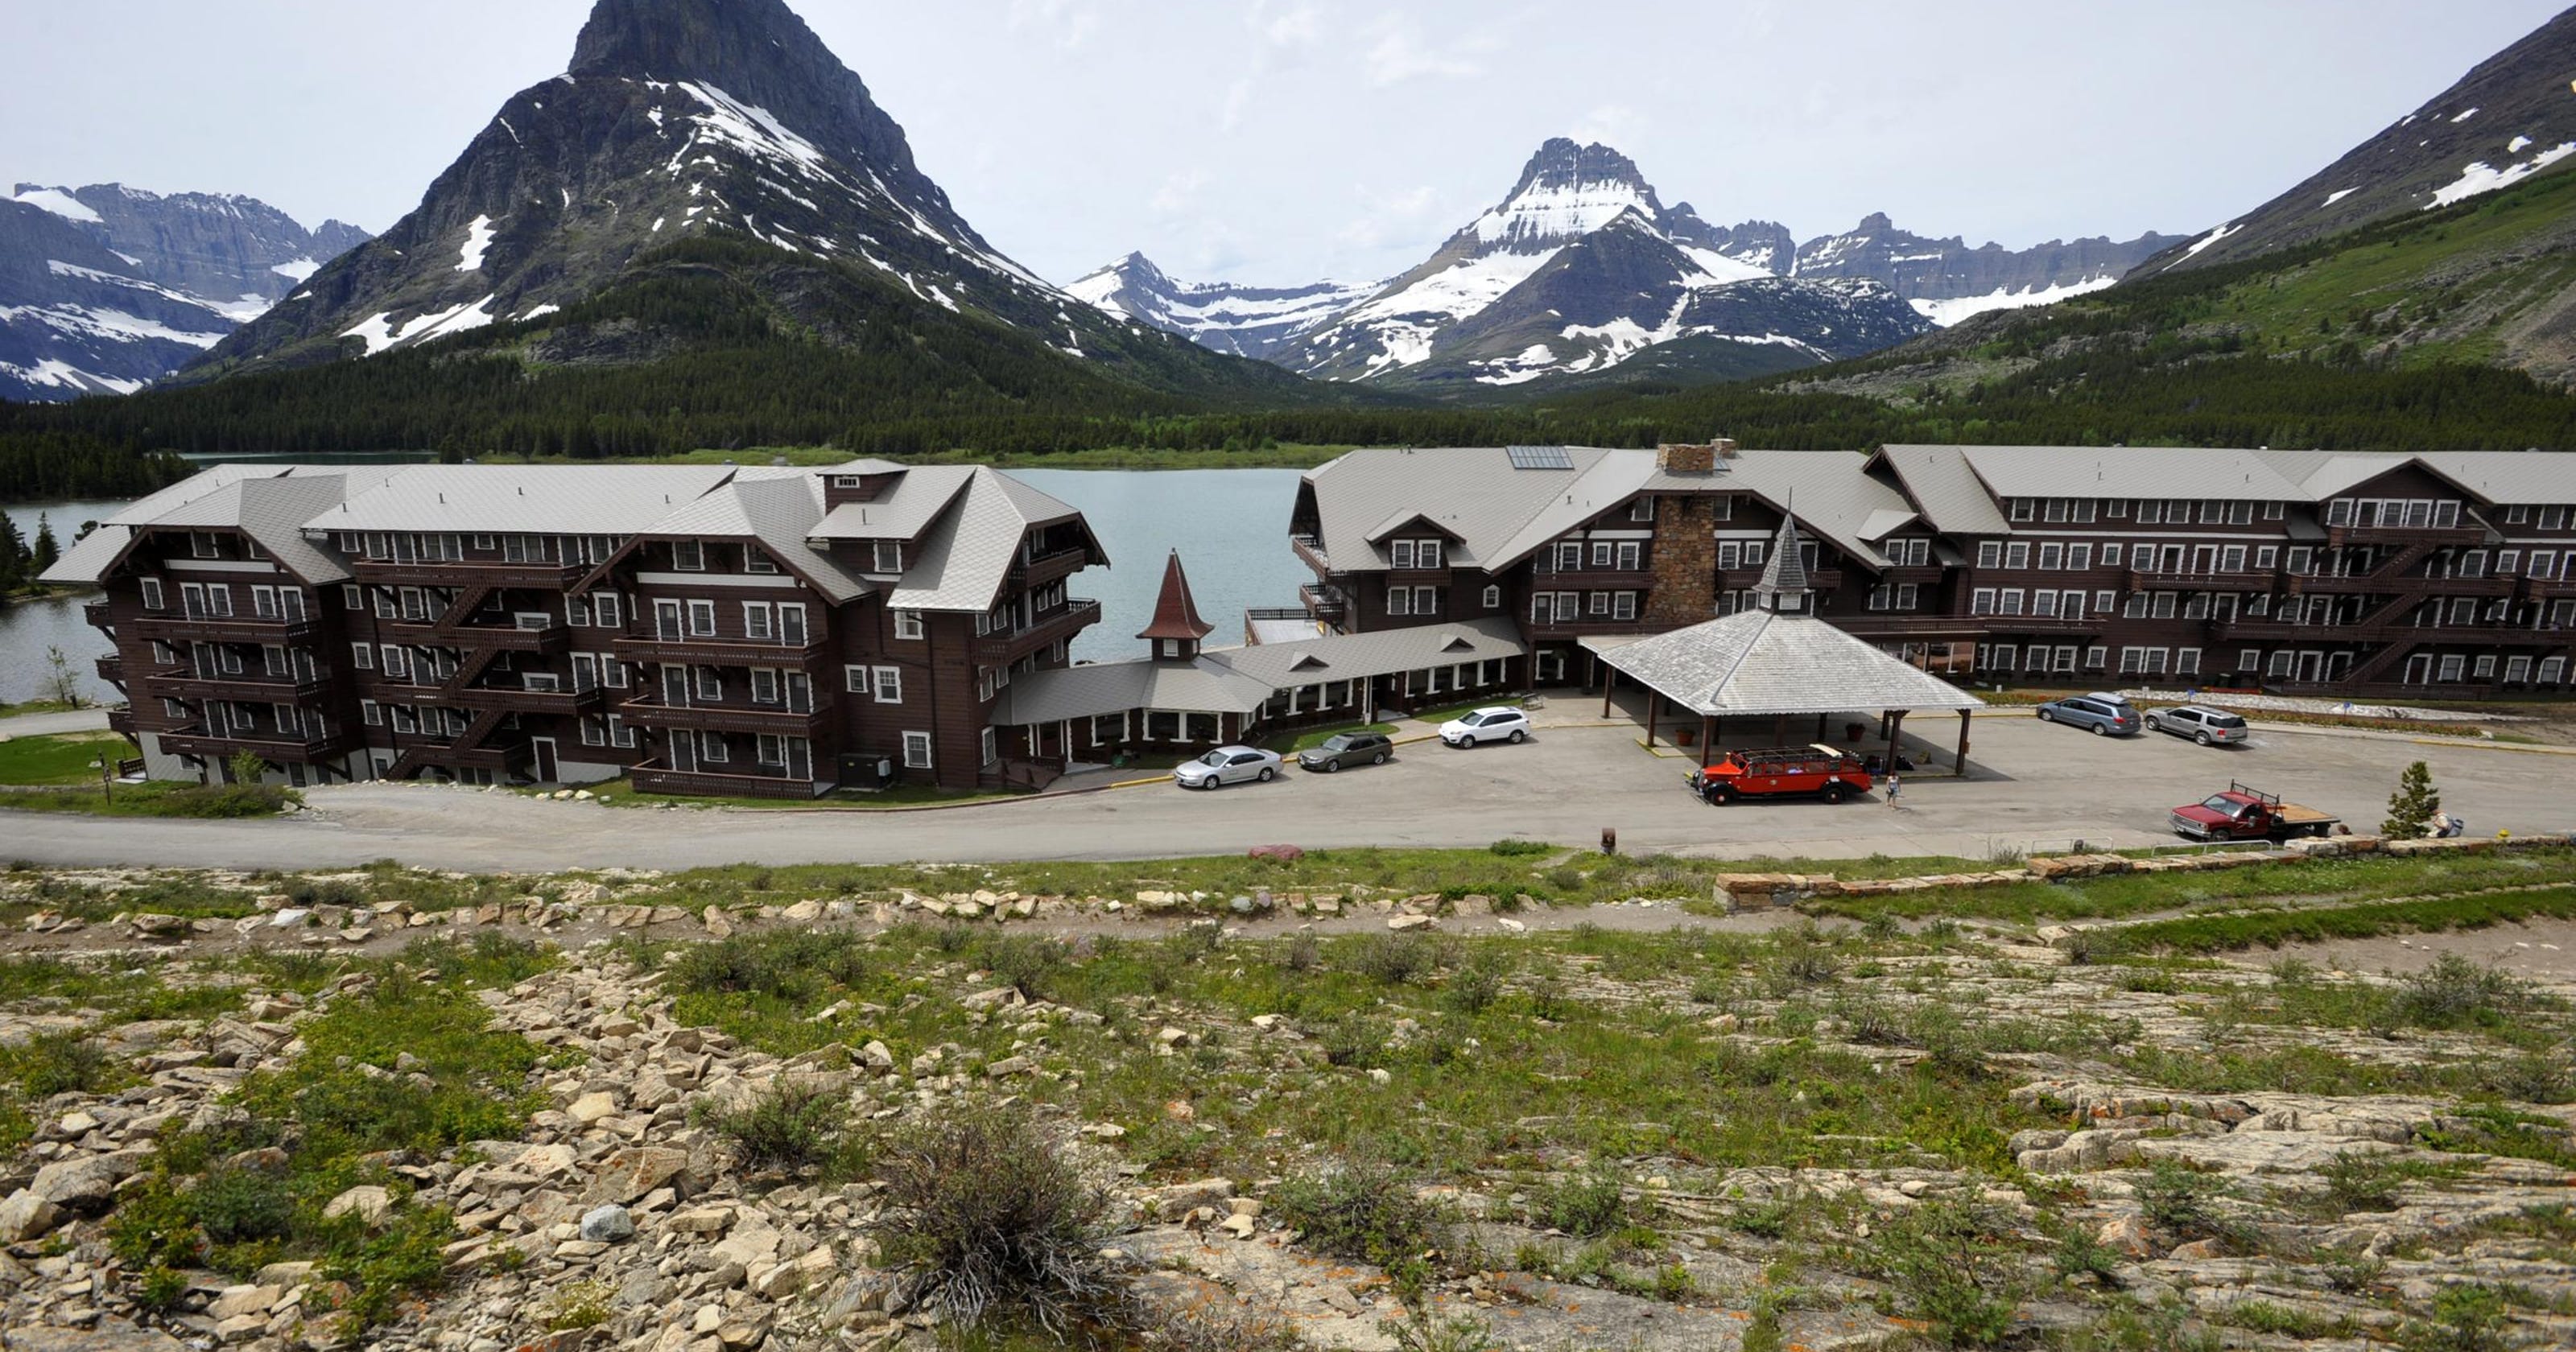 Many Glacier Hotel Celebrates A Century